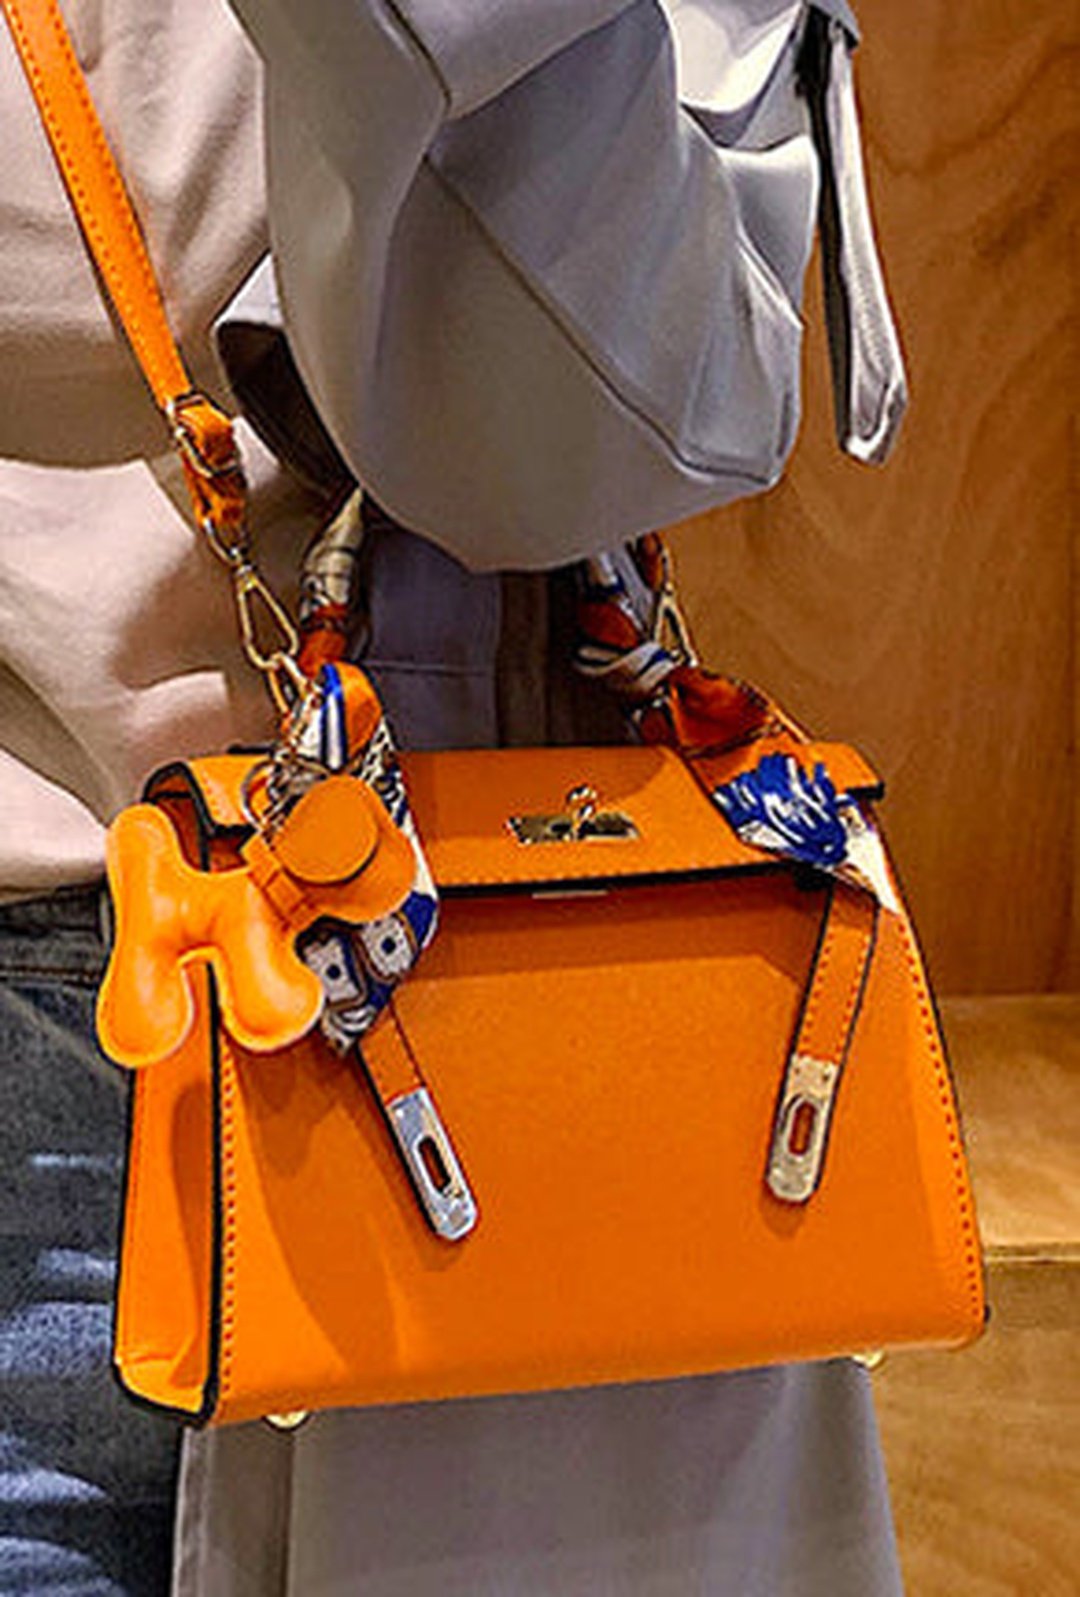 Buy Hermes Mini Kelly Bag Online In India -  India